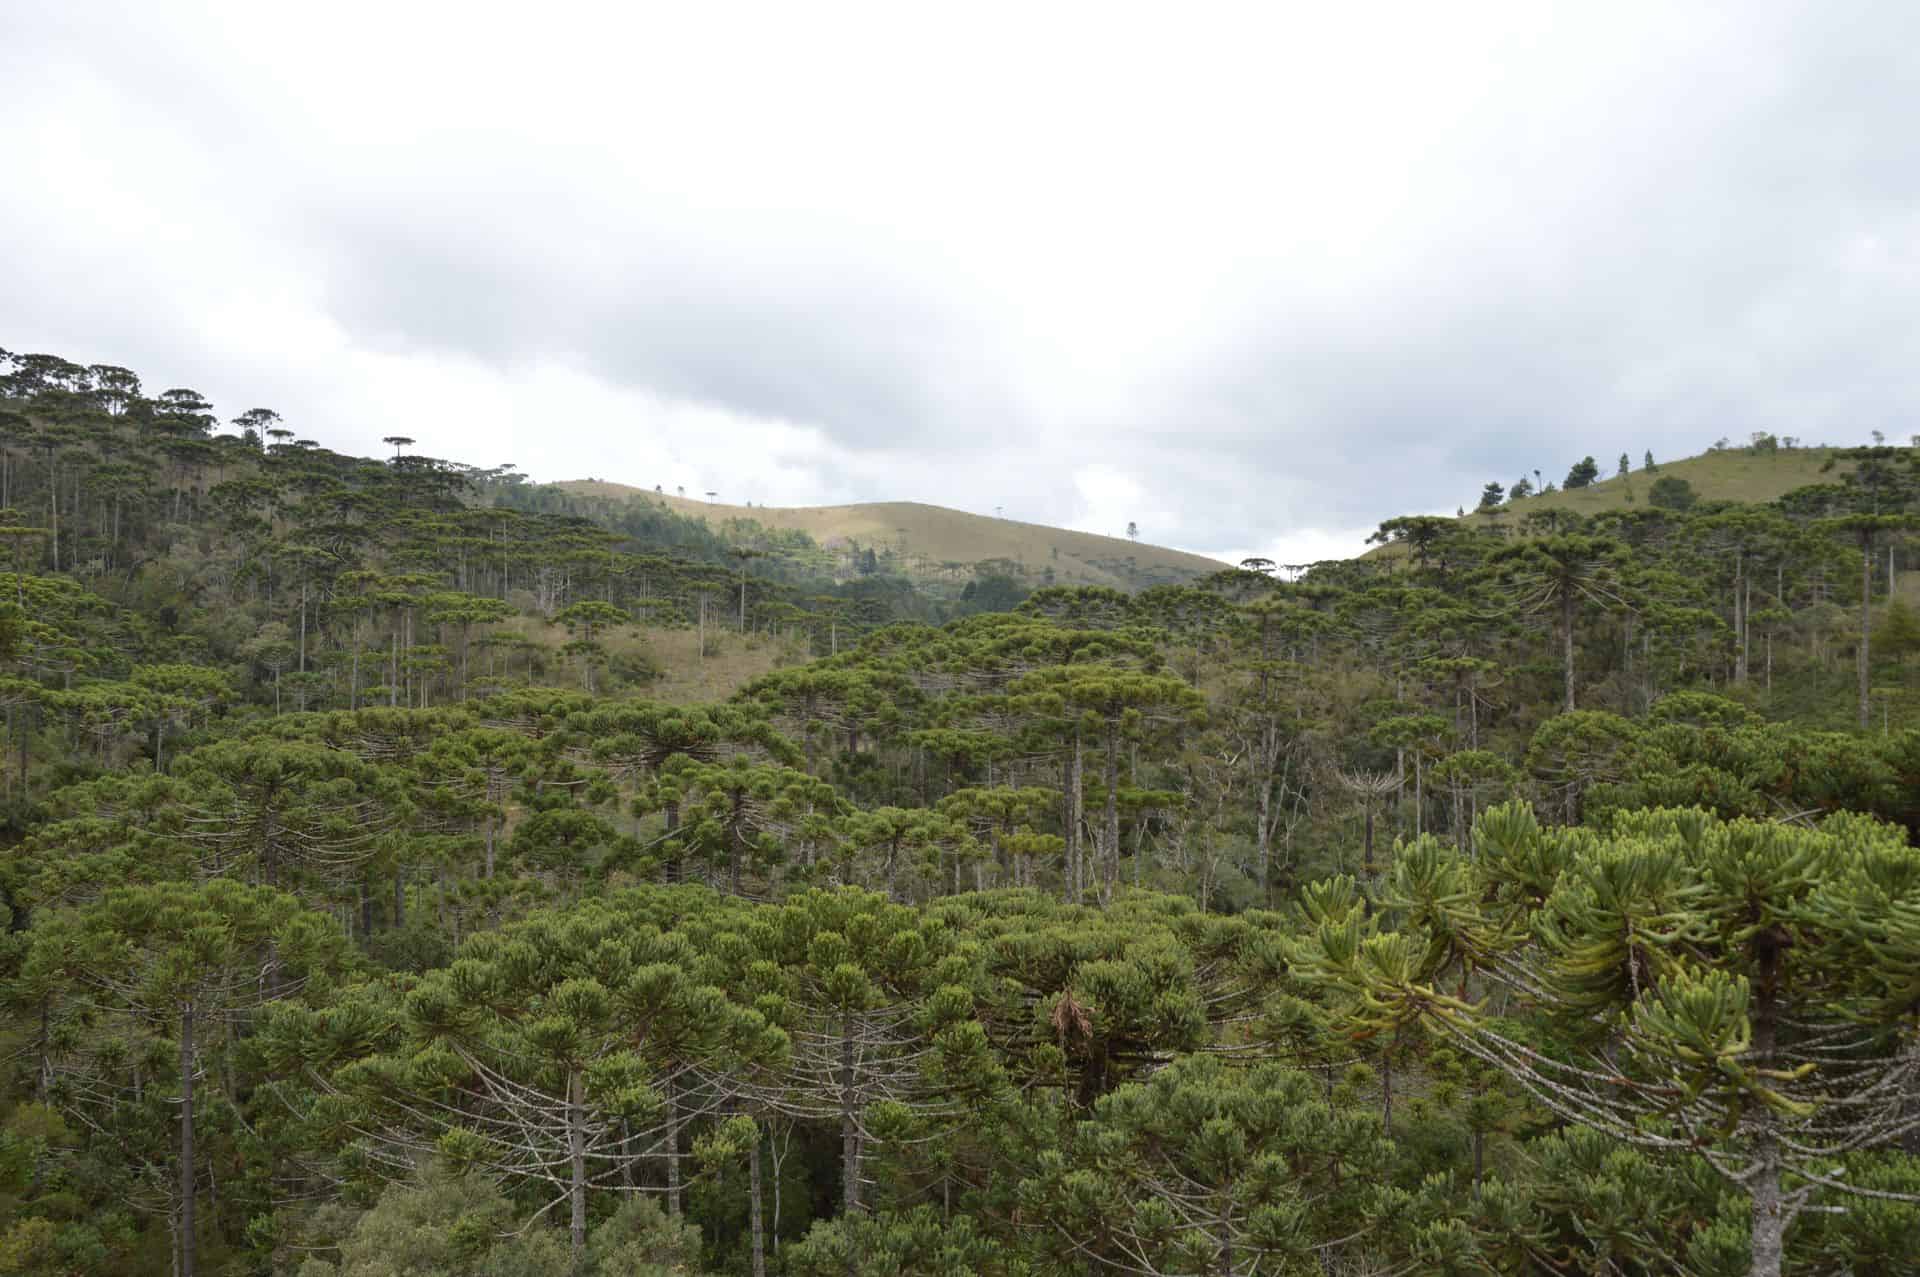 Jardineiros do Passado: Como os seres humanos da pré-história criaram florestas e salvaram árvores da extinção